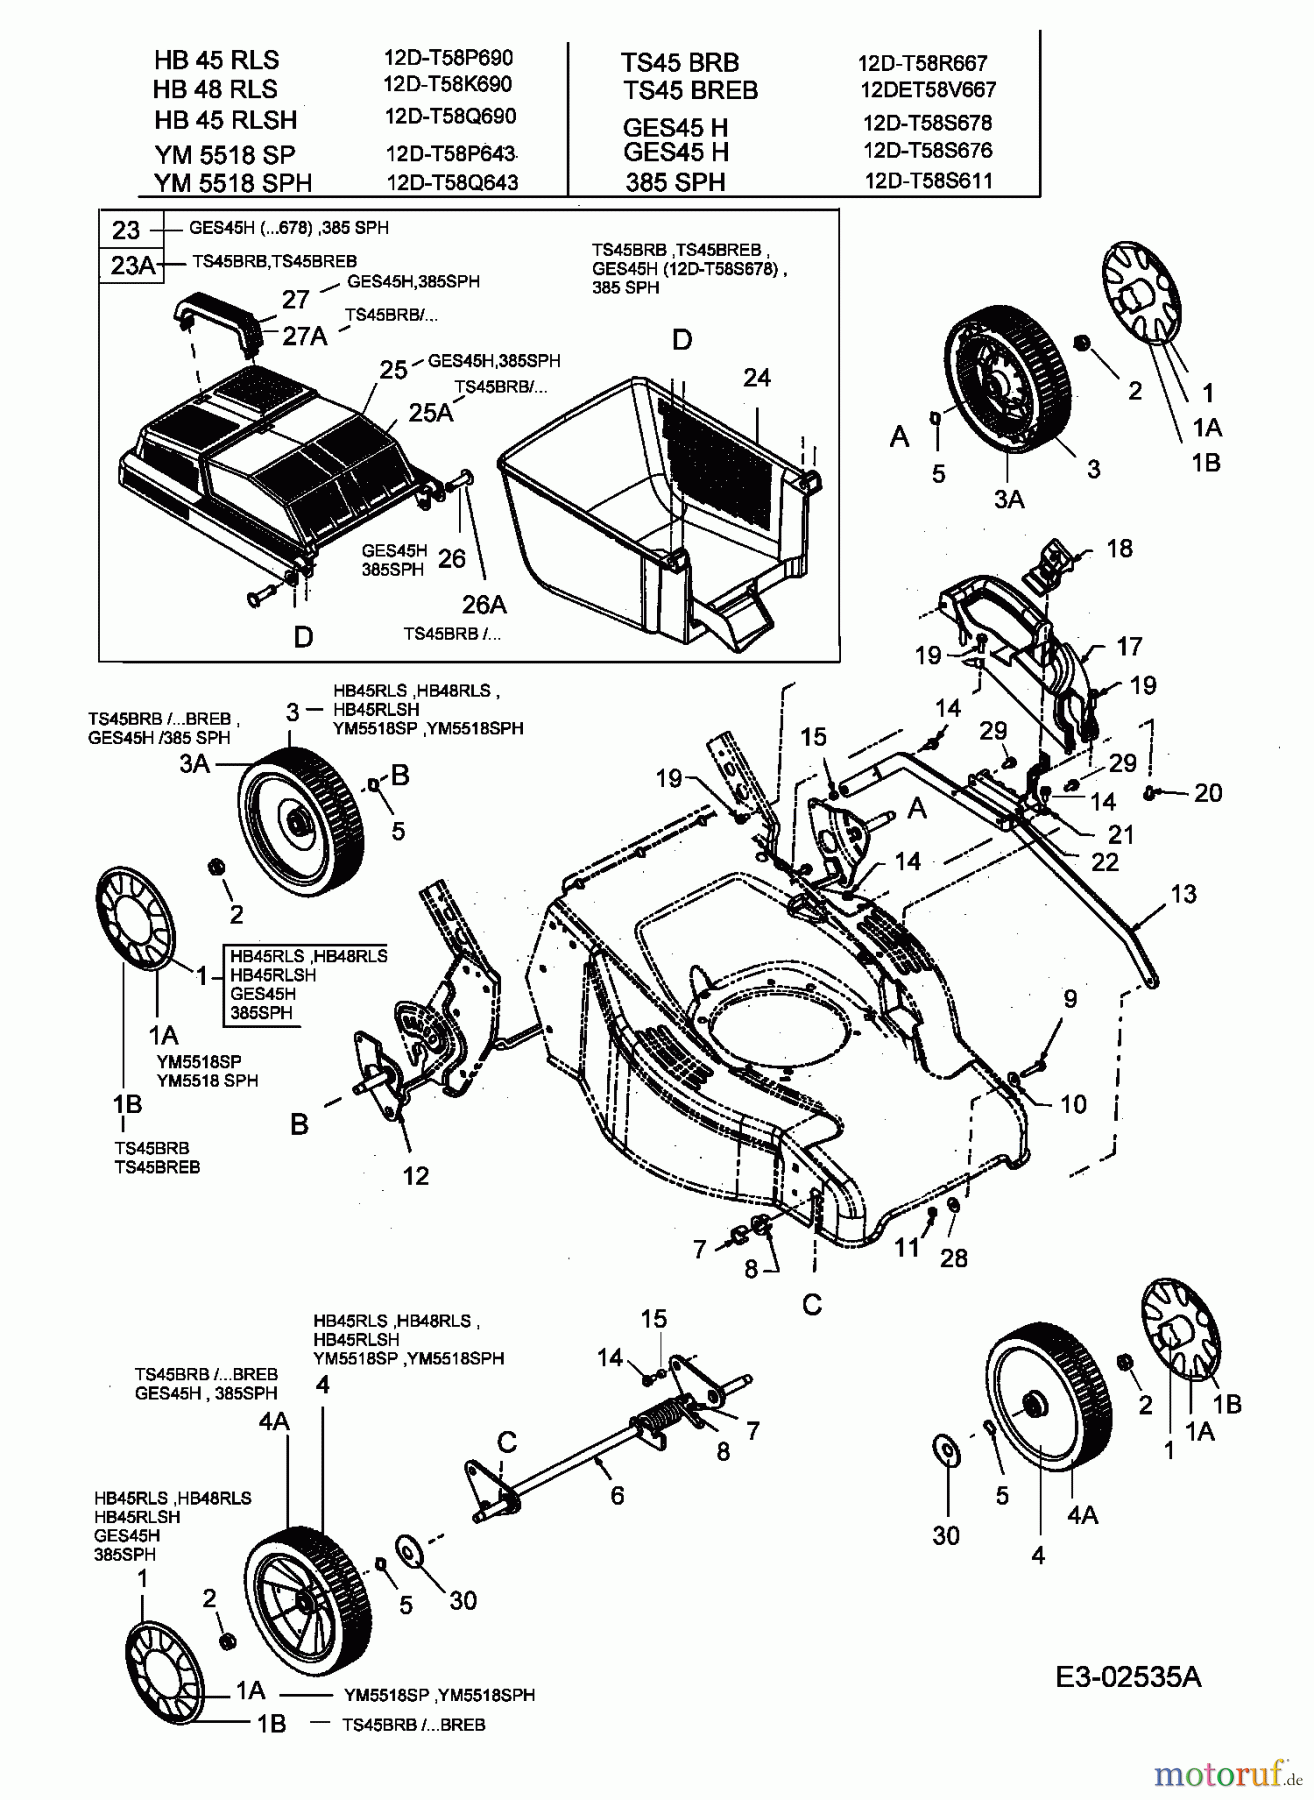  Turbo Silent Petrol mower self propelled TS 45 BR-B 12D-T58R667  (2005) Grass box, Wheels, Cutting hight adjustment